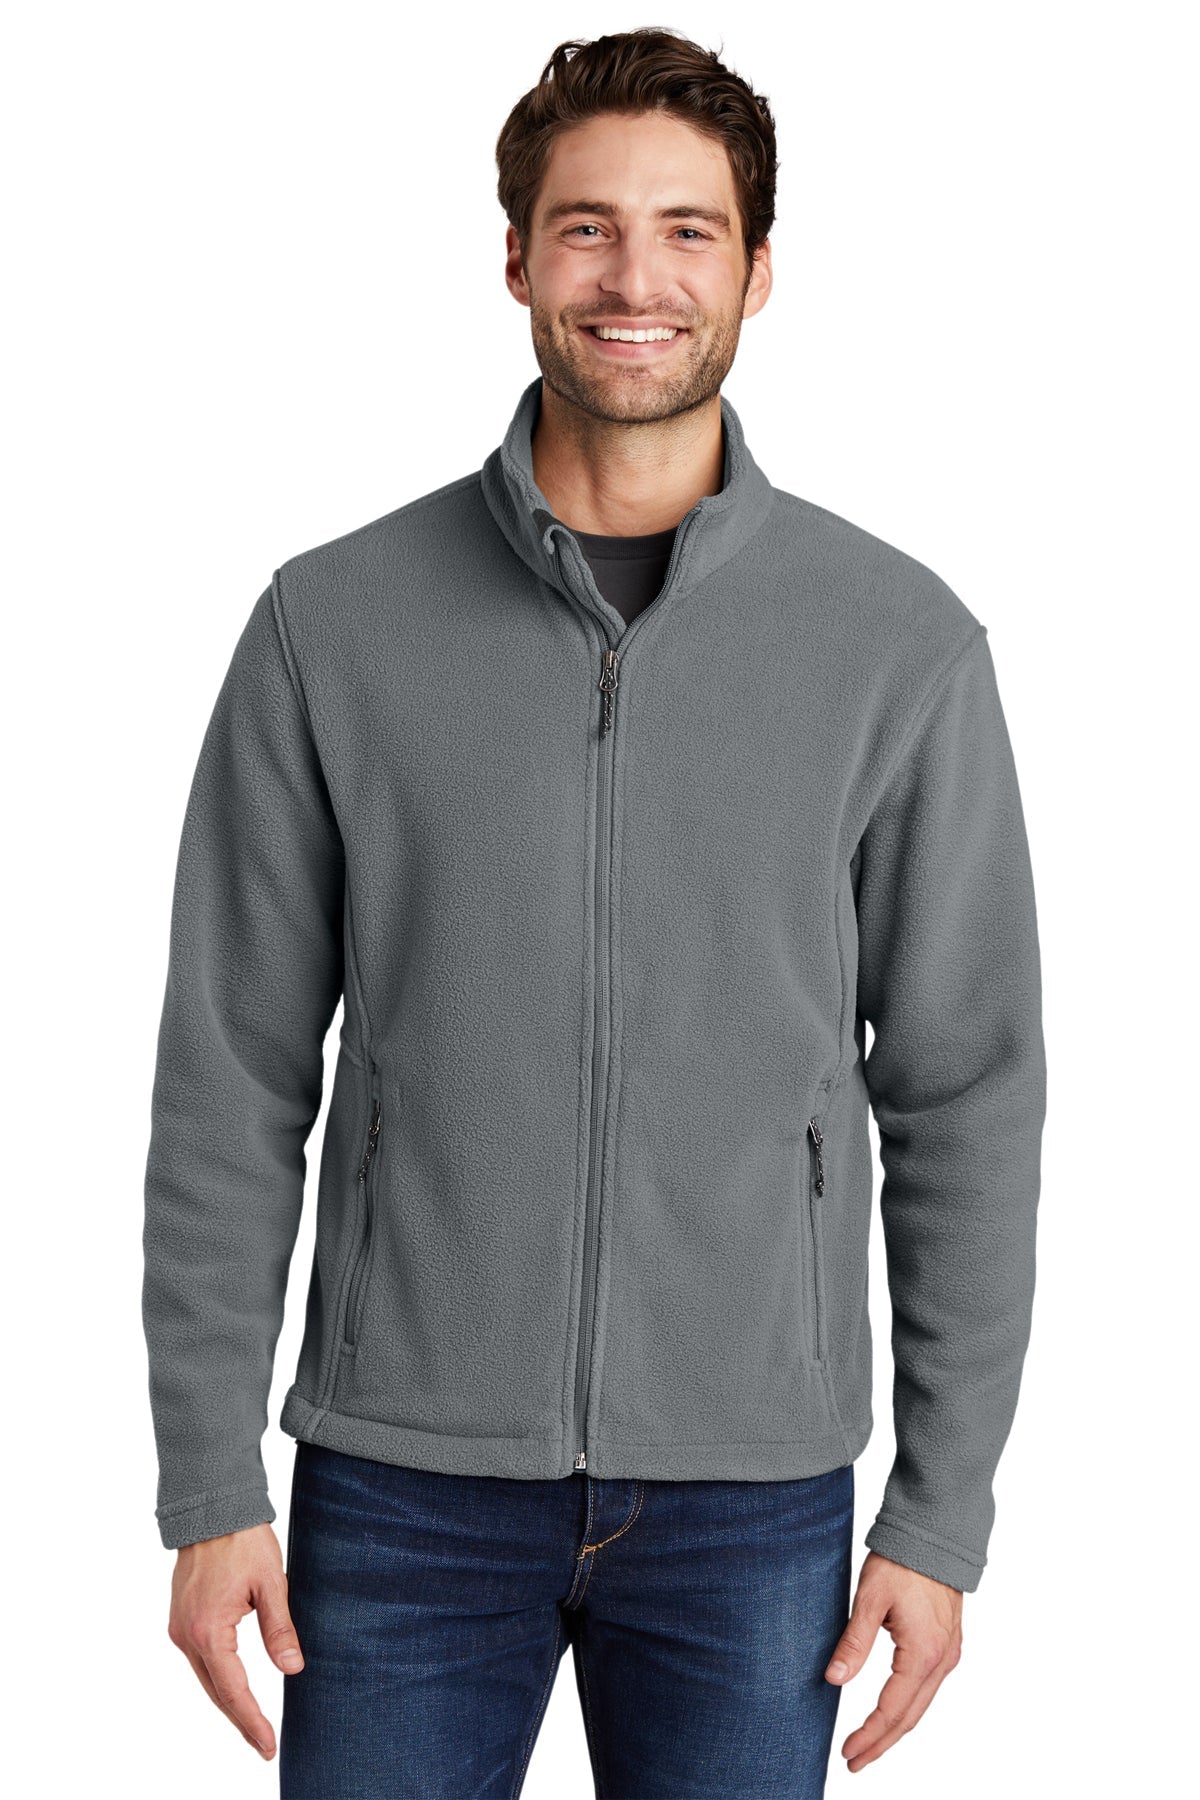 VA F217 Port Authority® Men's Value Fleece Jacket